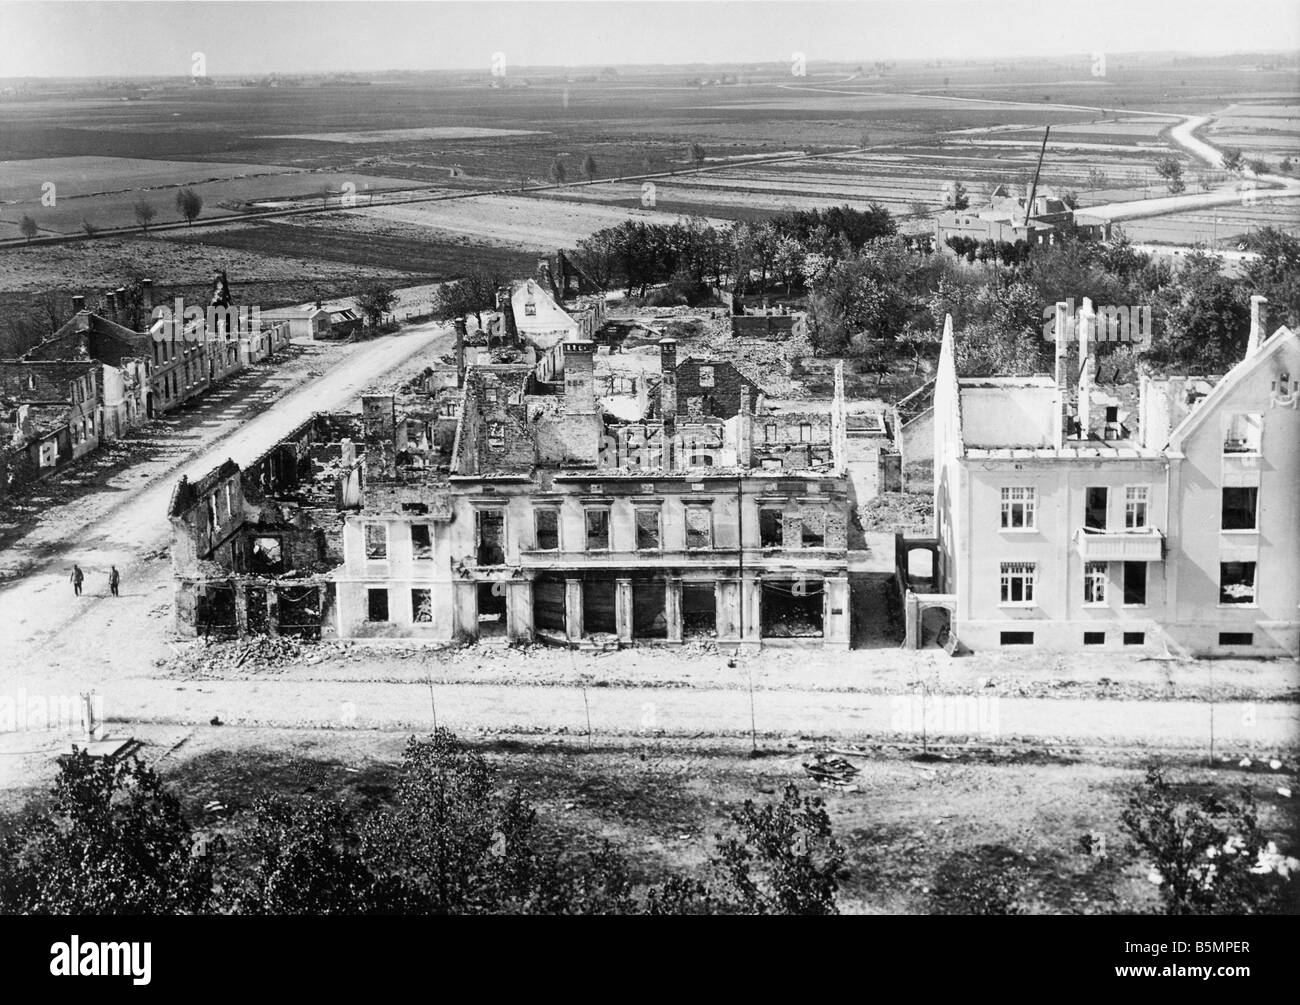 9 1914 8 26 A1 2 e East vista frontale del case in rovina la Prima Guerra Mondiale sul fronte orientale battaglia vicino a Tannenberg Masuren Prussia Orientale da 2 Foto Stock